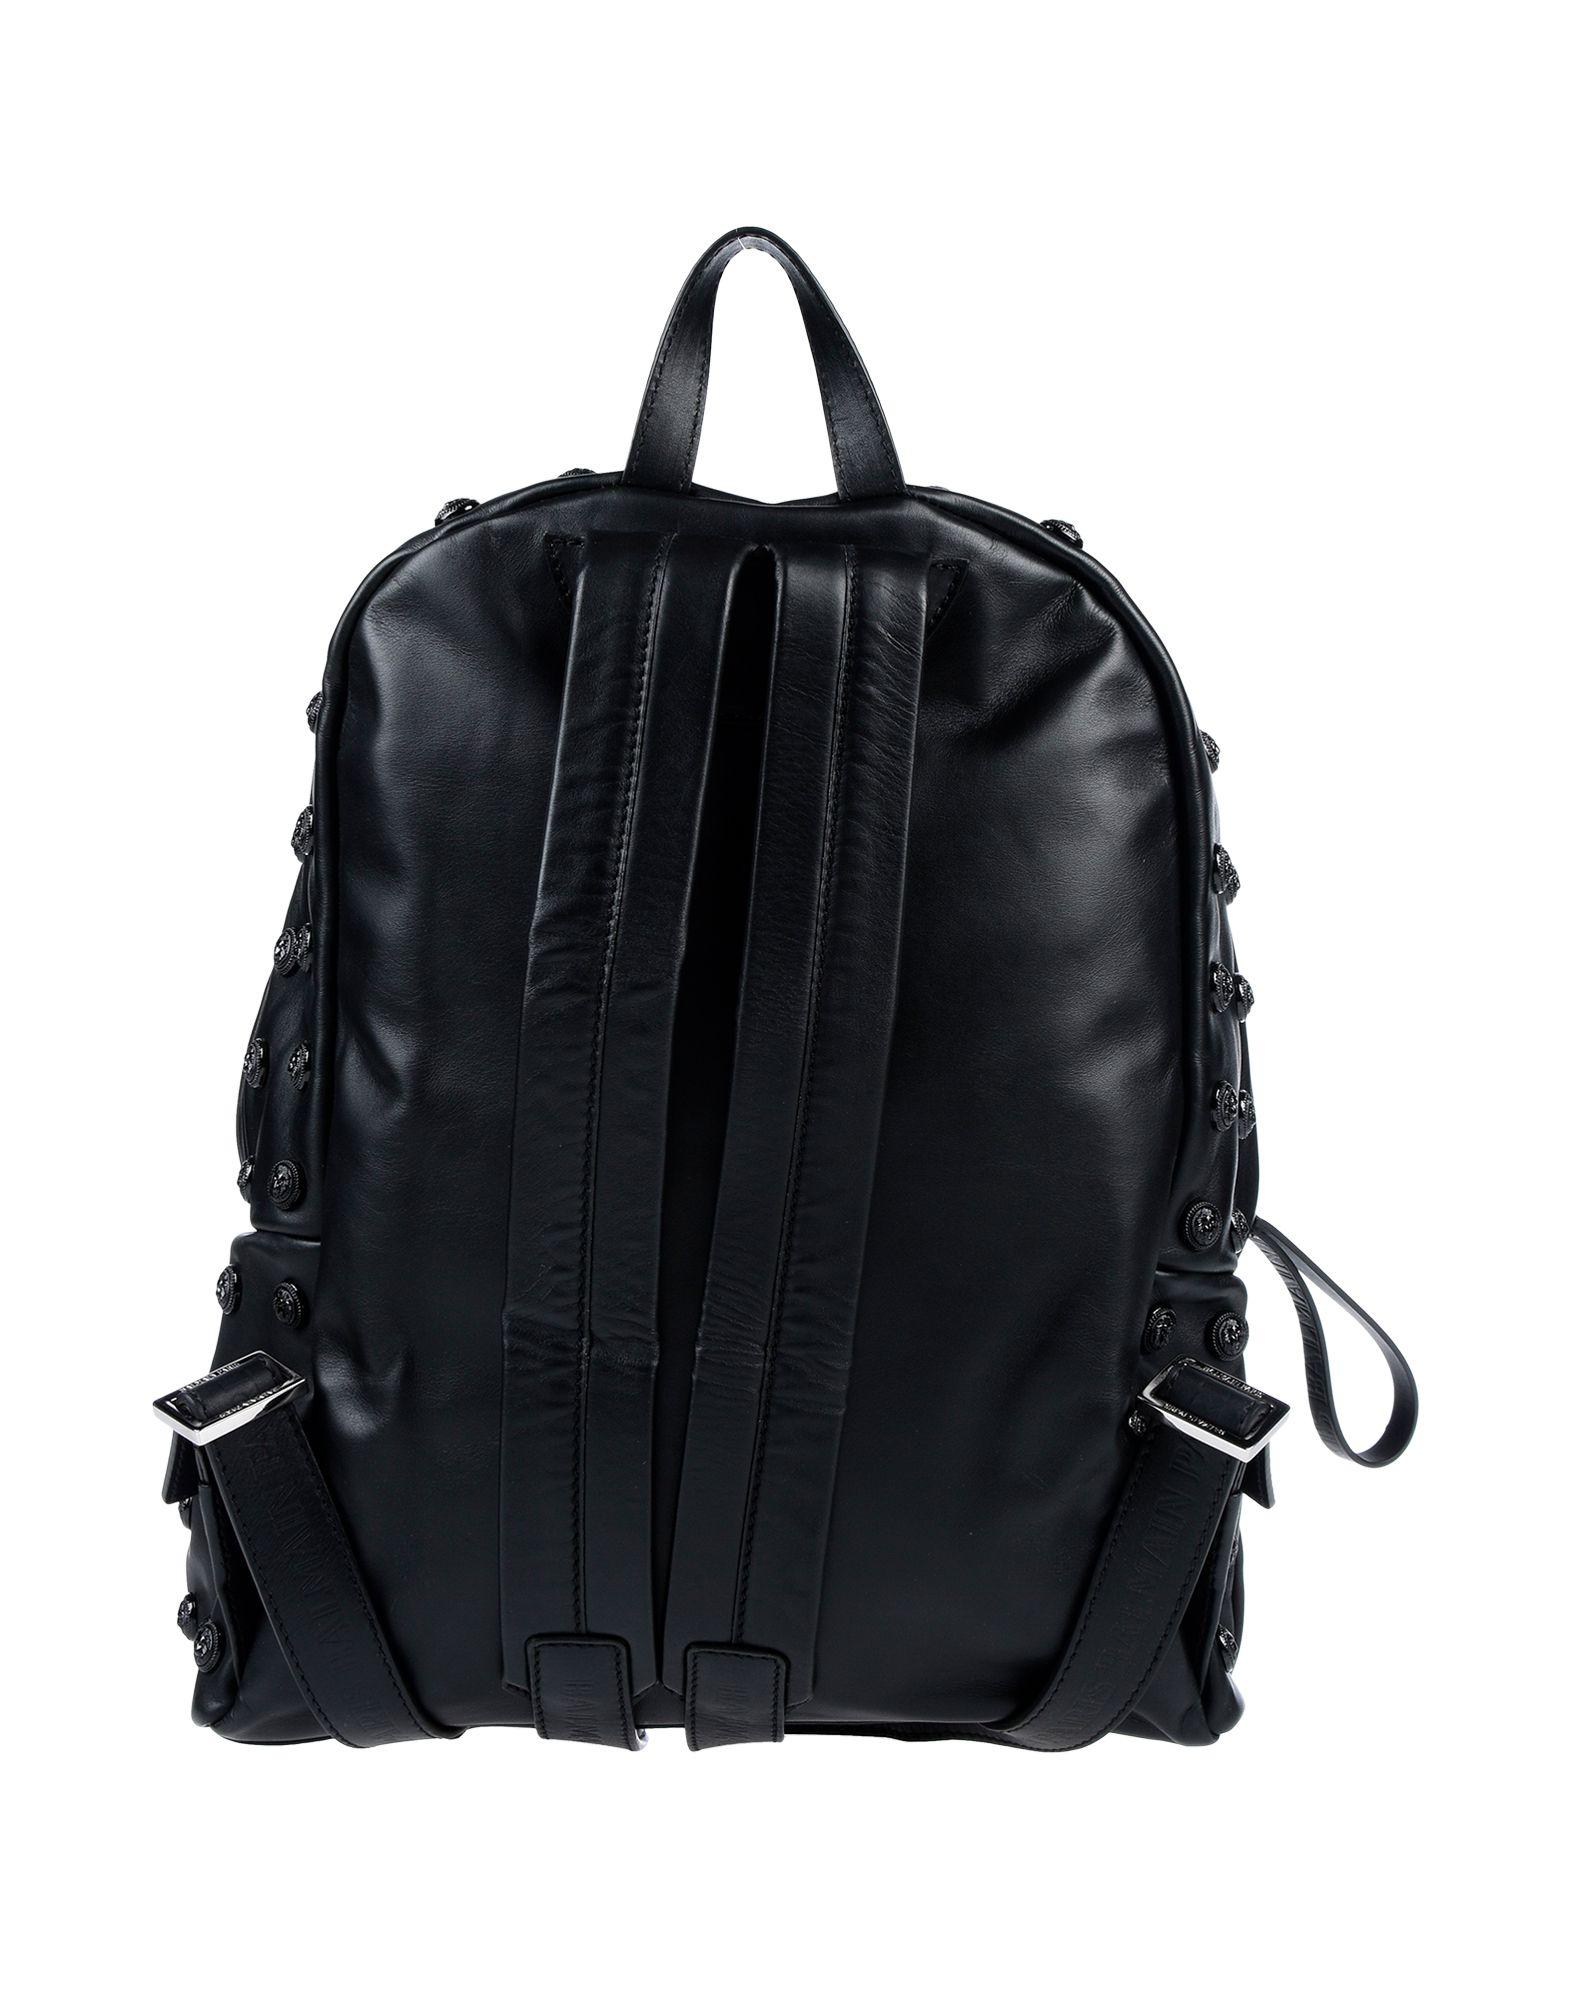 Balmain Leather Backpacks & Fanny Packs in Black for Men - Lyst